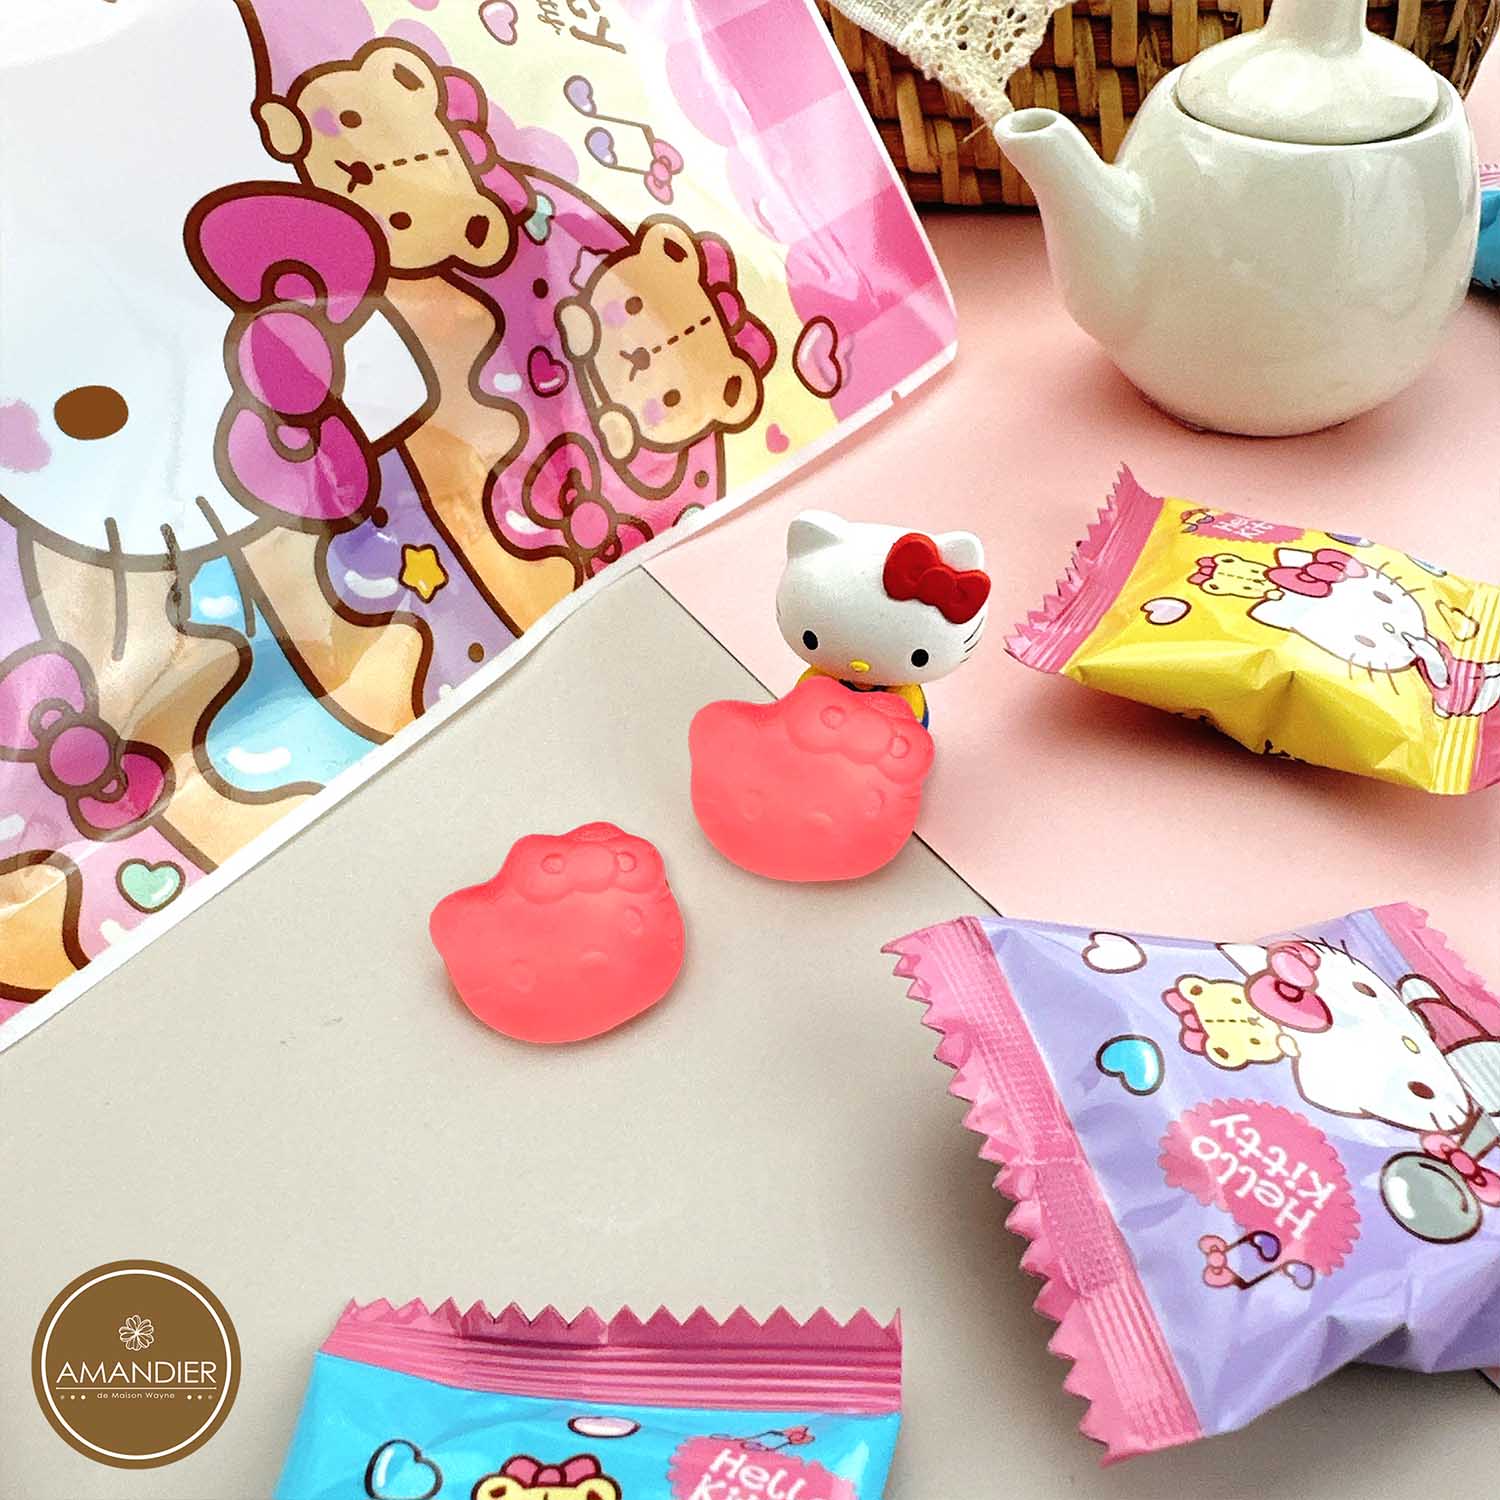 【雅蒙蒂】Hello Kitty造型軟糖隨手包 (水蜜桃乳酸風味)